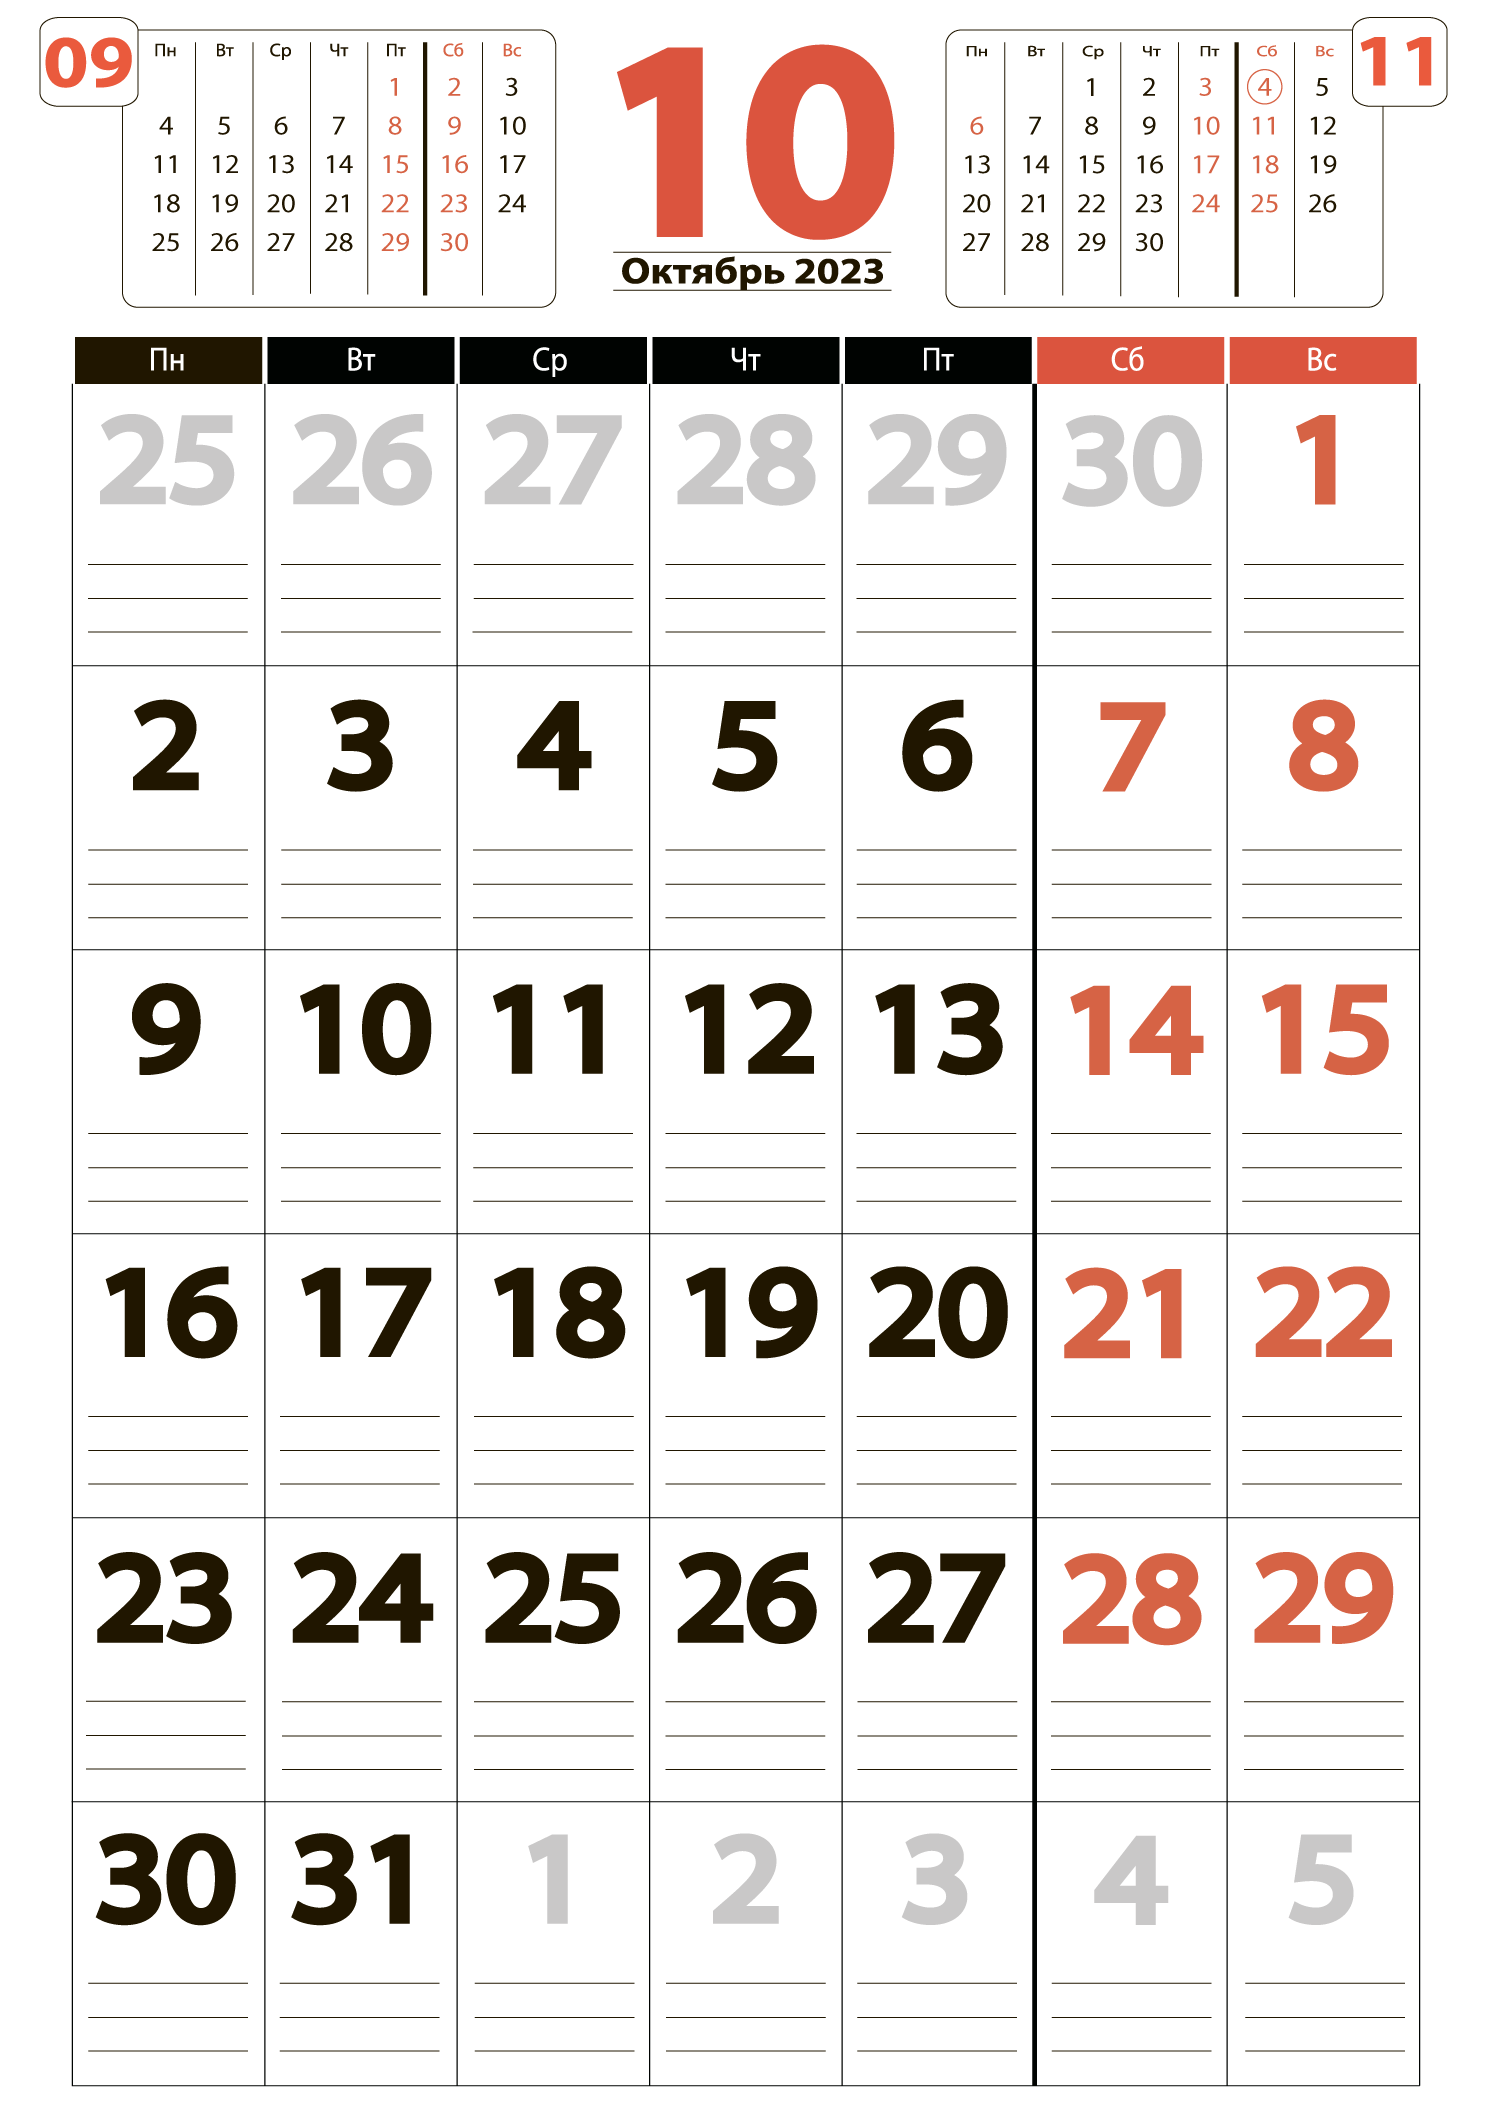 Печать крупного календаря на октябрь 2023